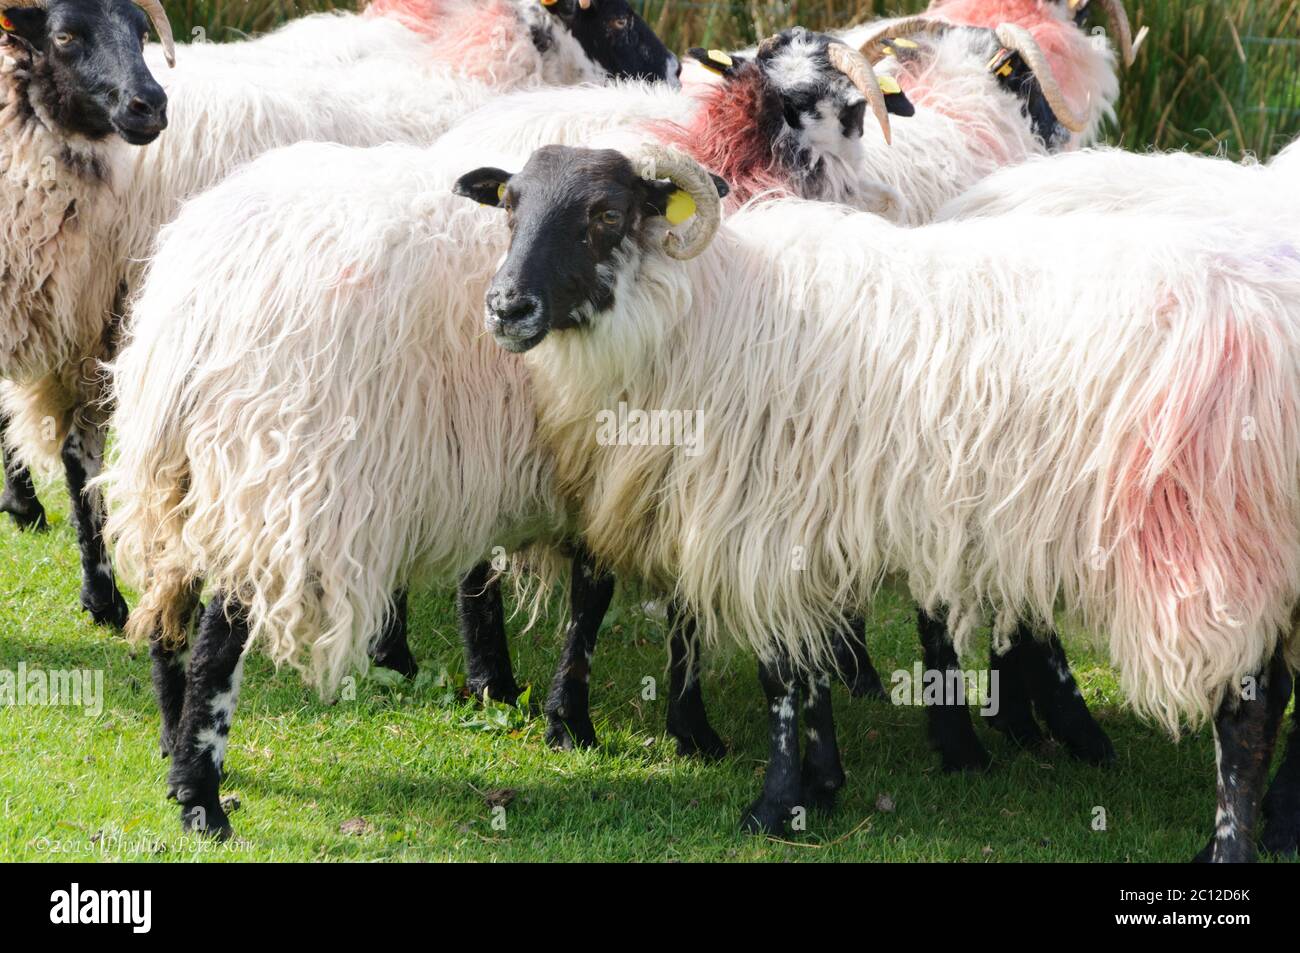 Des moutons à tête noire avec cornes et cheveux blancs sont trouvés à un rassemblement de moutons dans une ferme de moutons en Irlande. Photo de haute qualité Banque D'Images